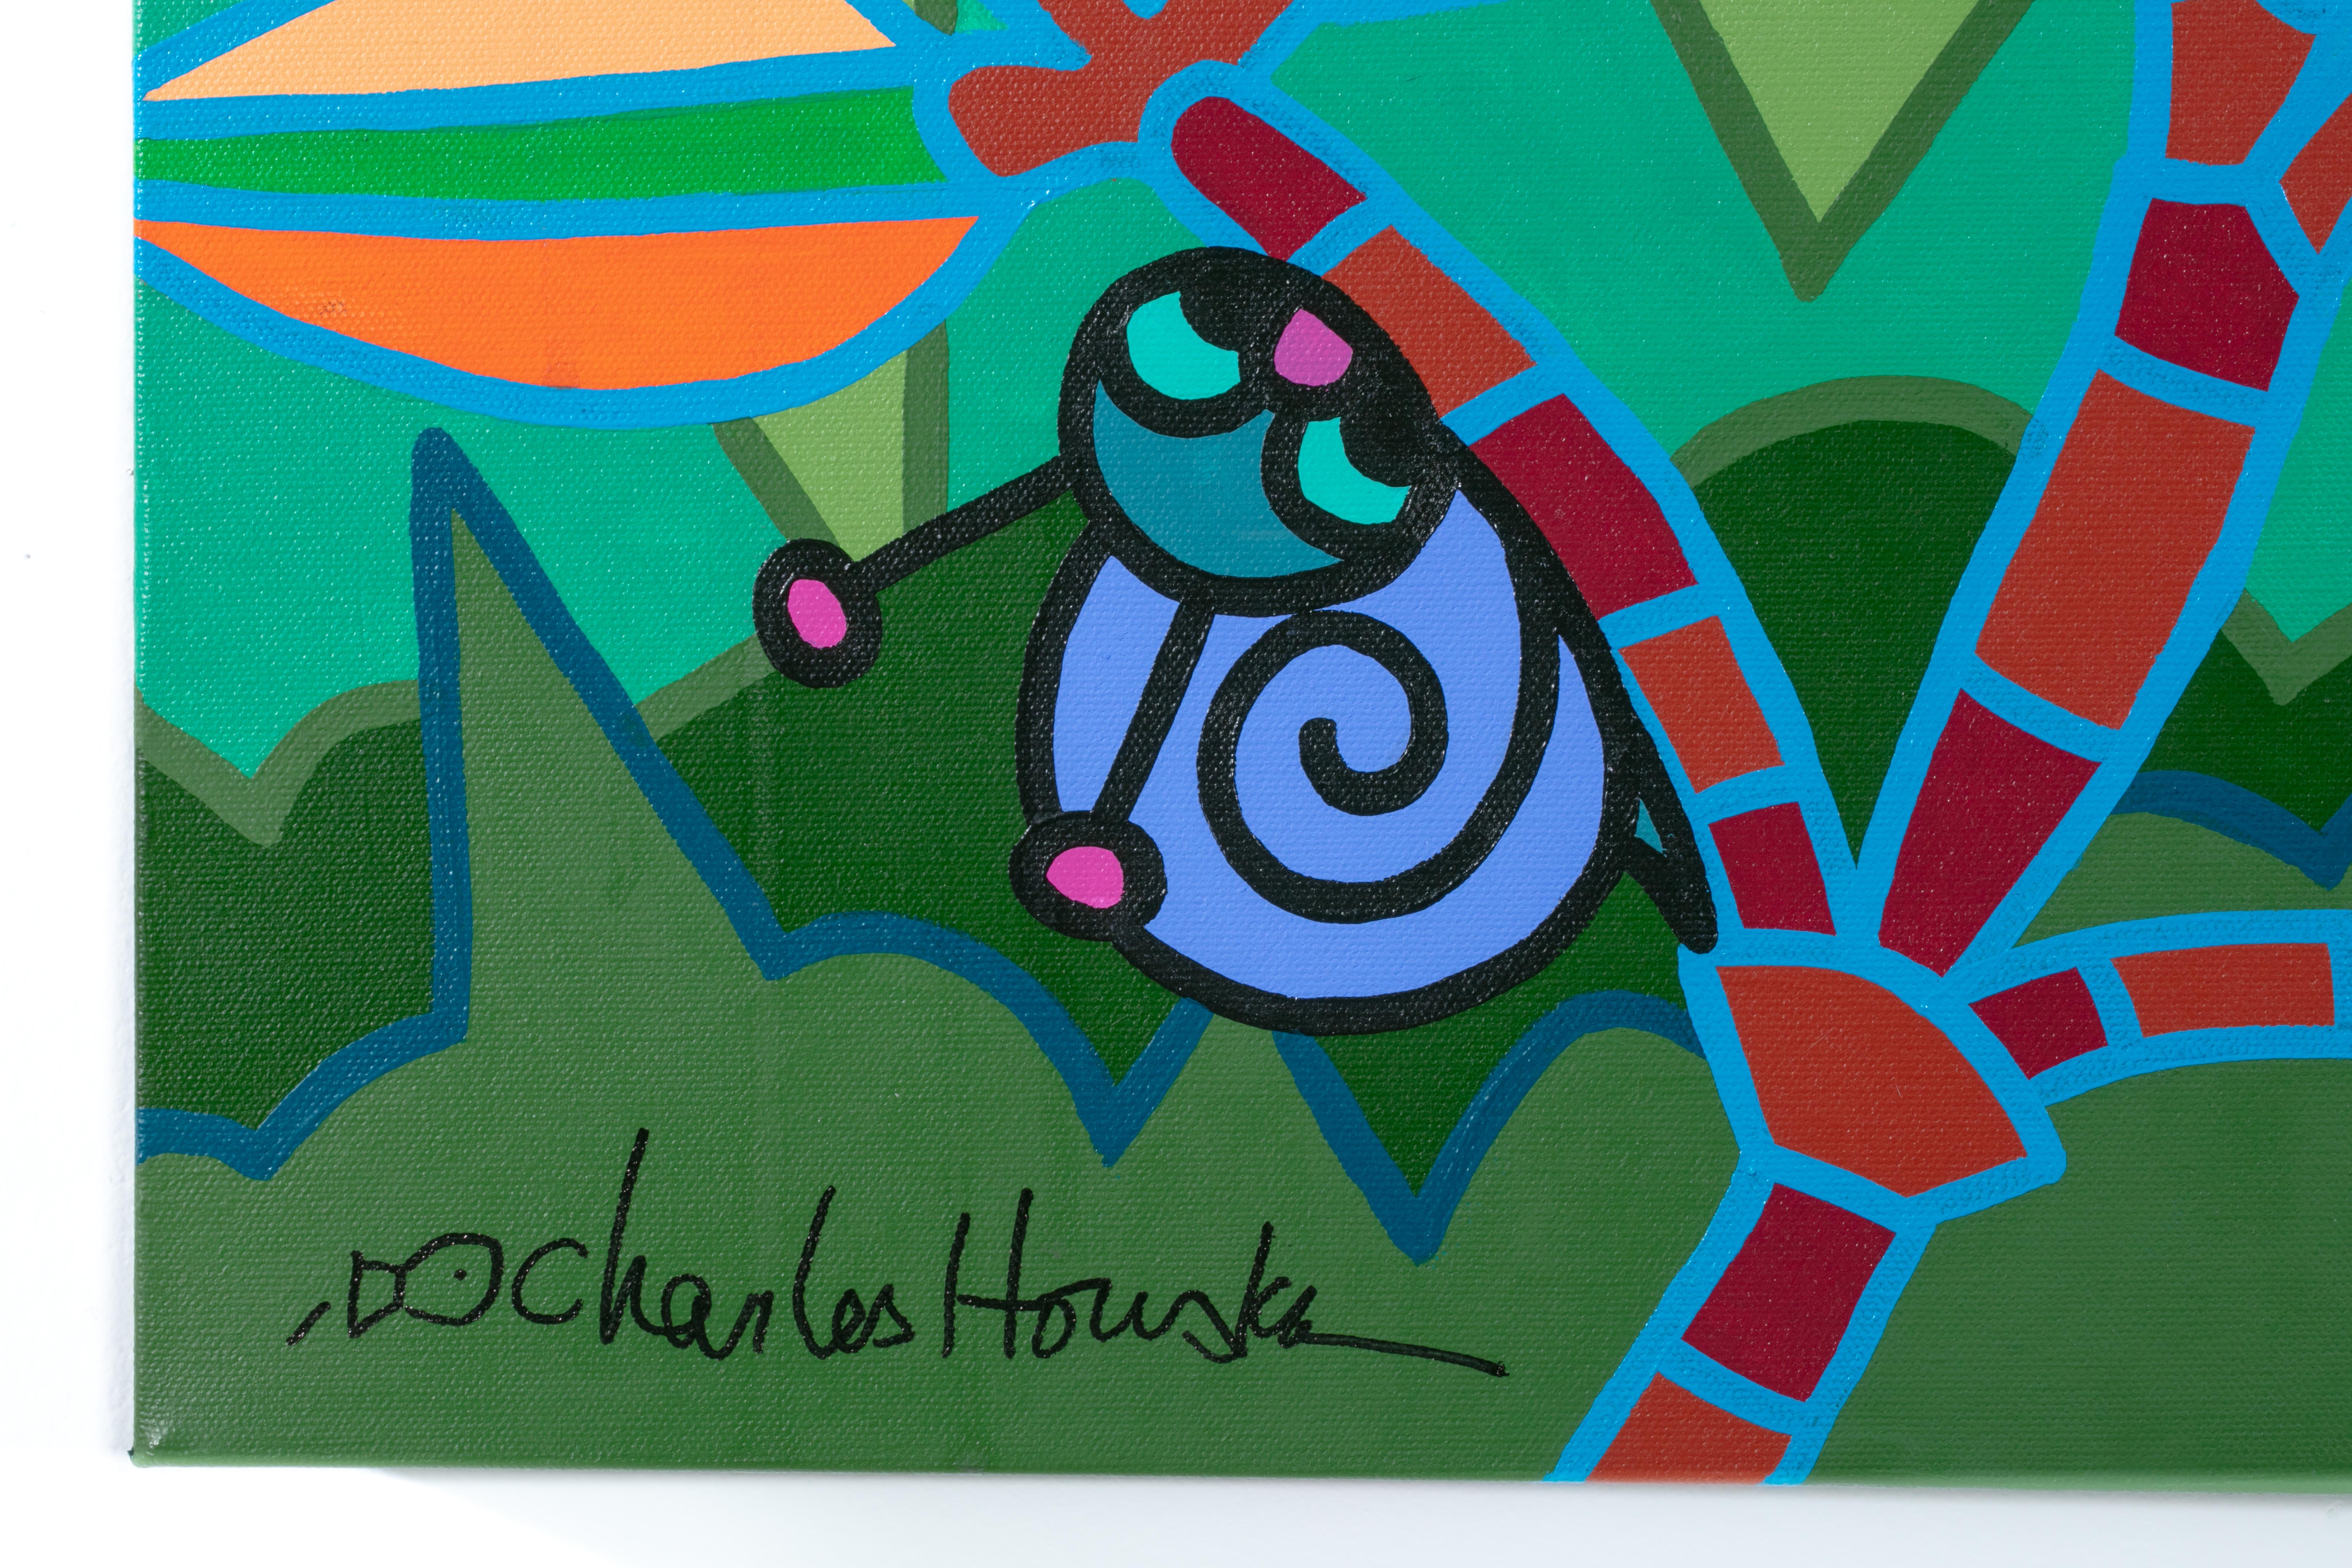 Dans Chinoiserie Jungle Party de Houska, on retrouve son style pop art classique et l'utilisation de couleurs douces pour créer une scène de jungle animée avec divers personnages emblématiques.